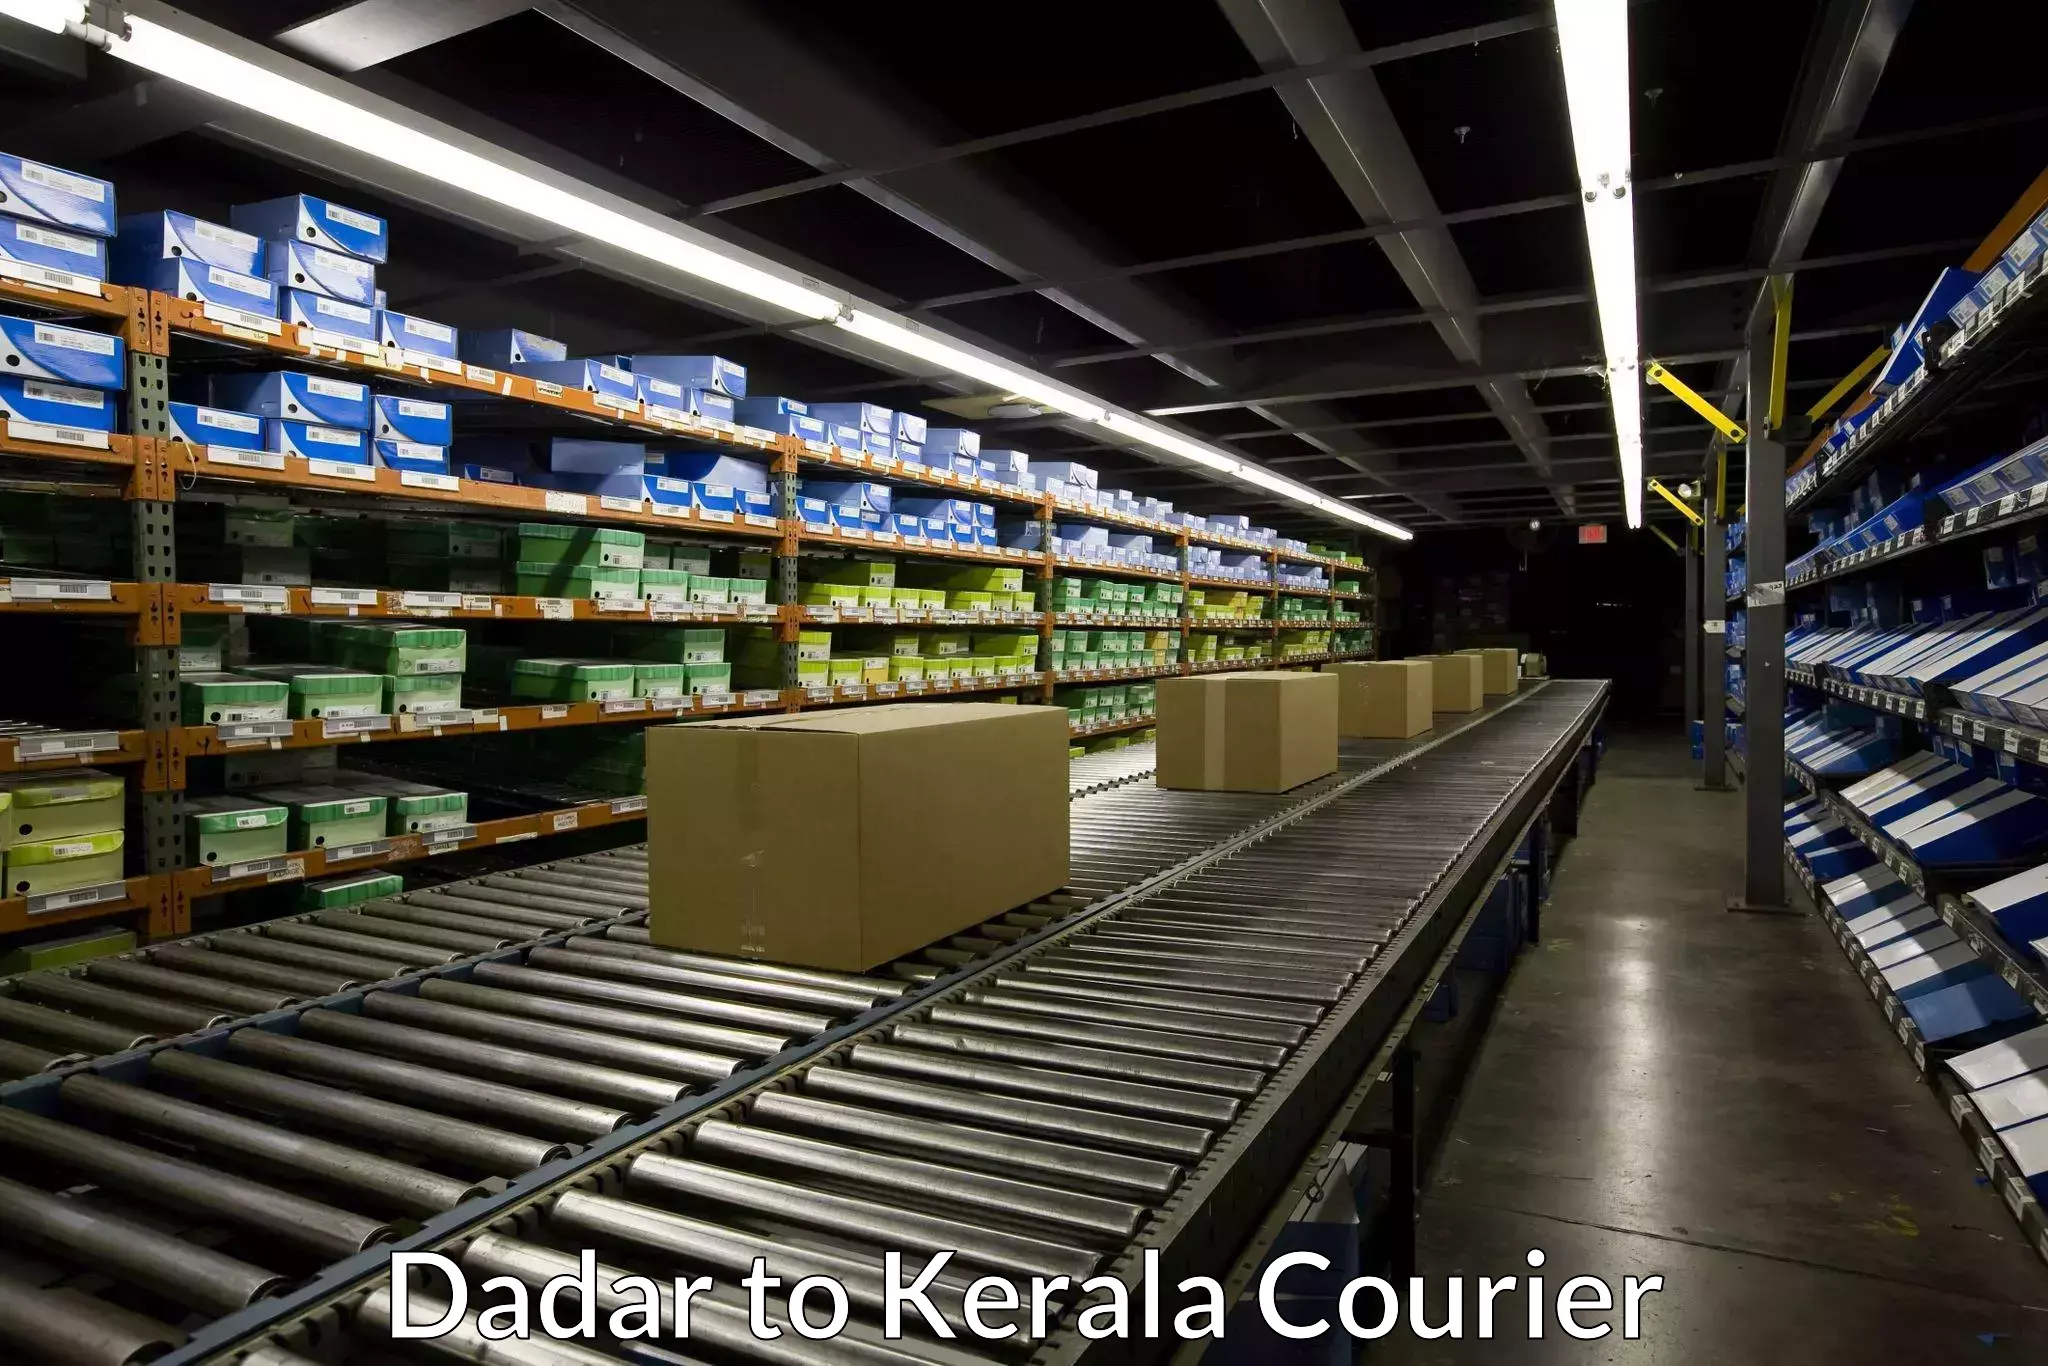 Urban courier service Dadar to Kerala